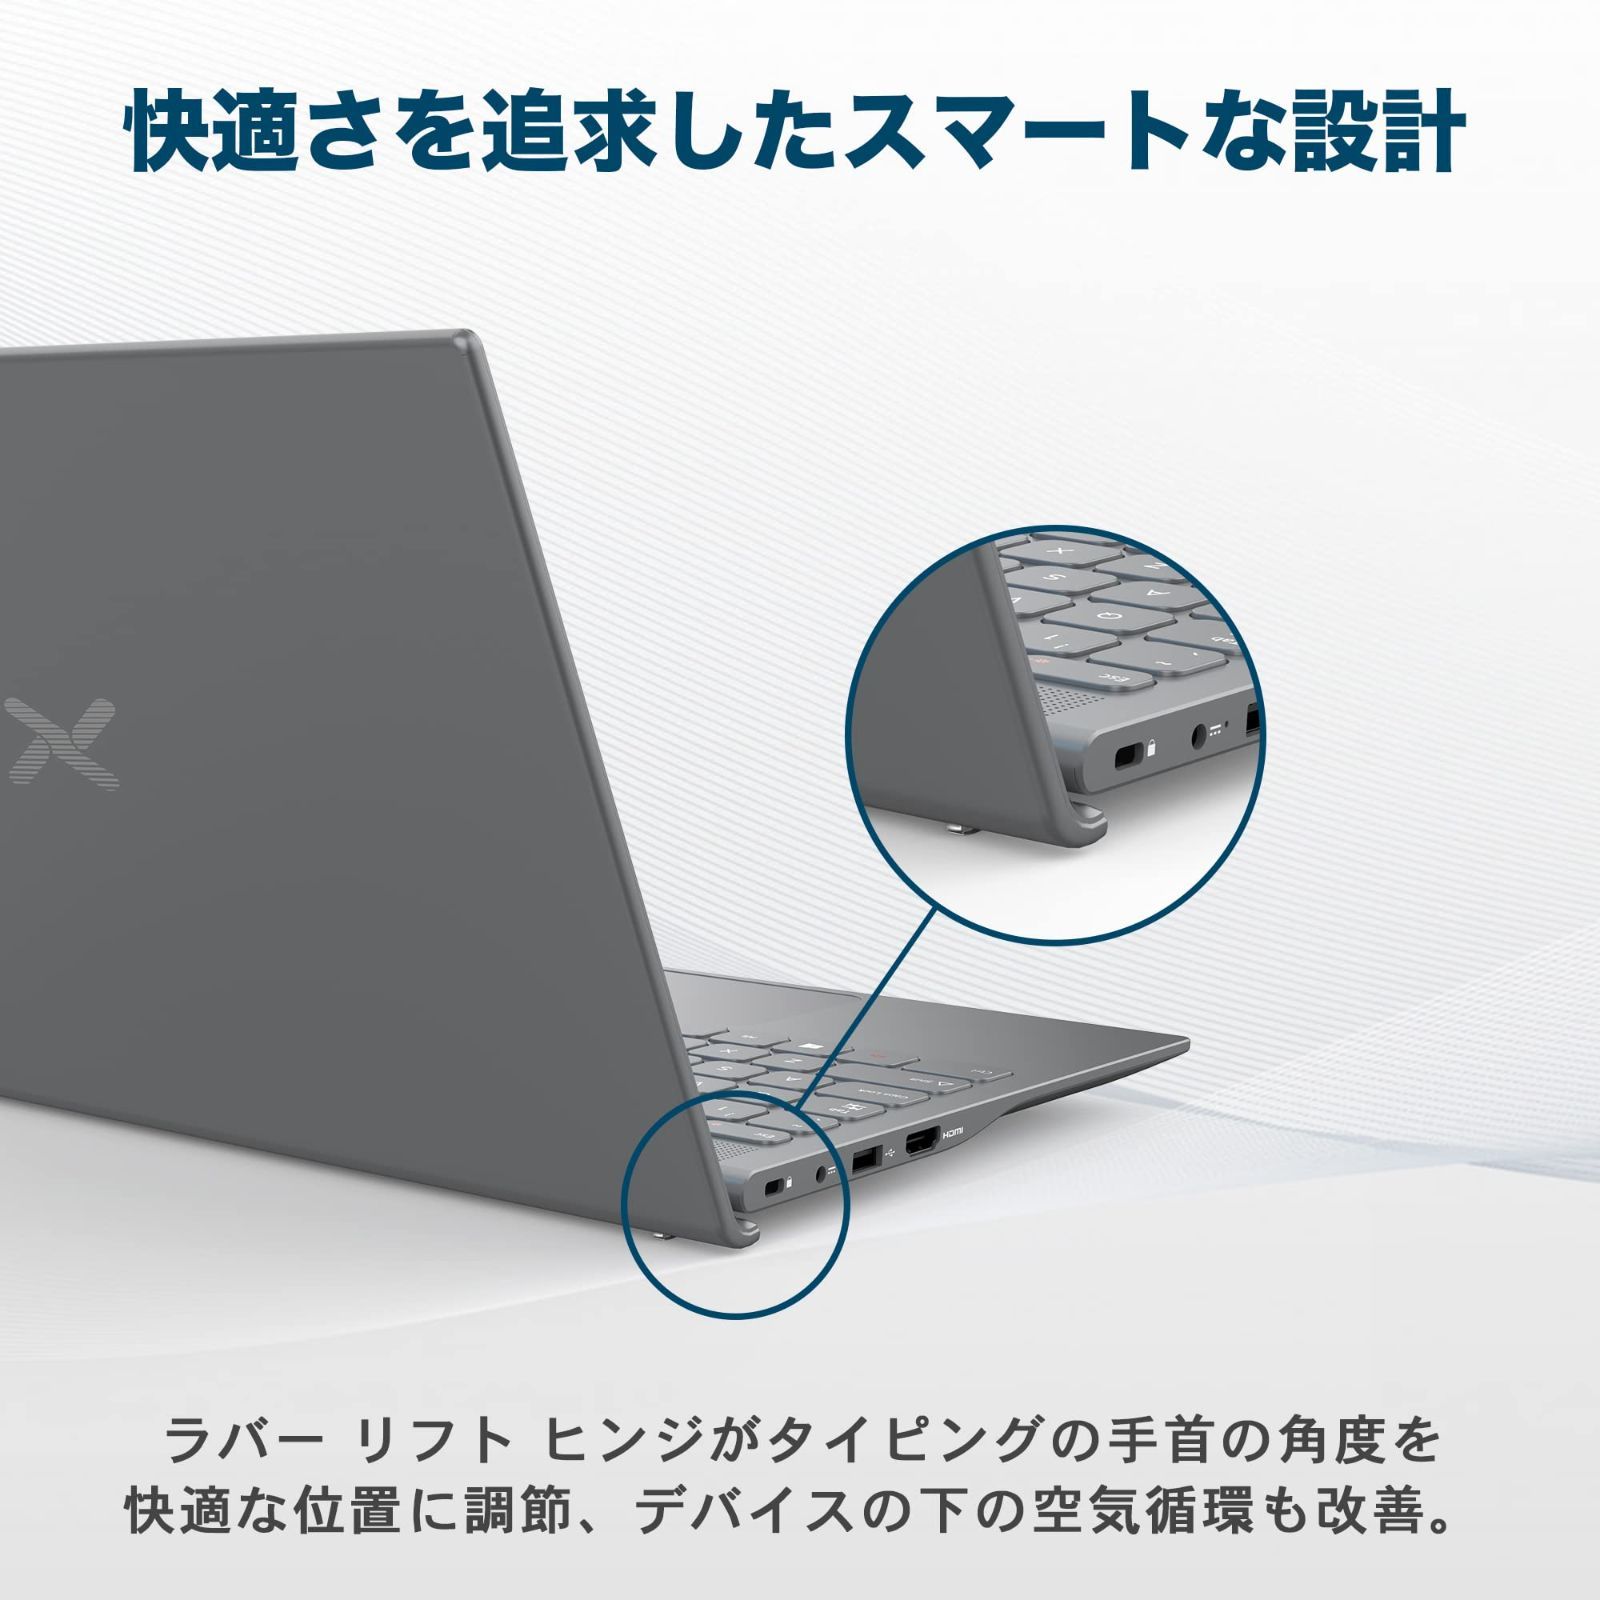 パソコンノートLaptop(グレー) WIFI/Bluetooth/USB3.0/HDMI/日本語 